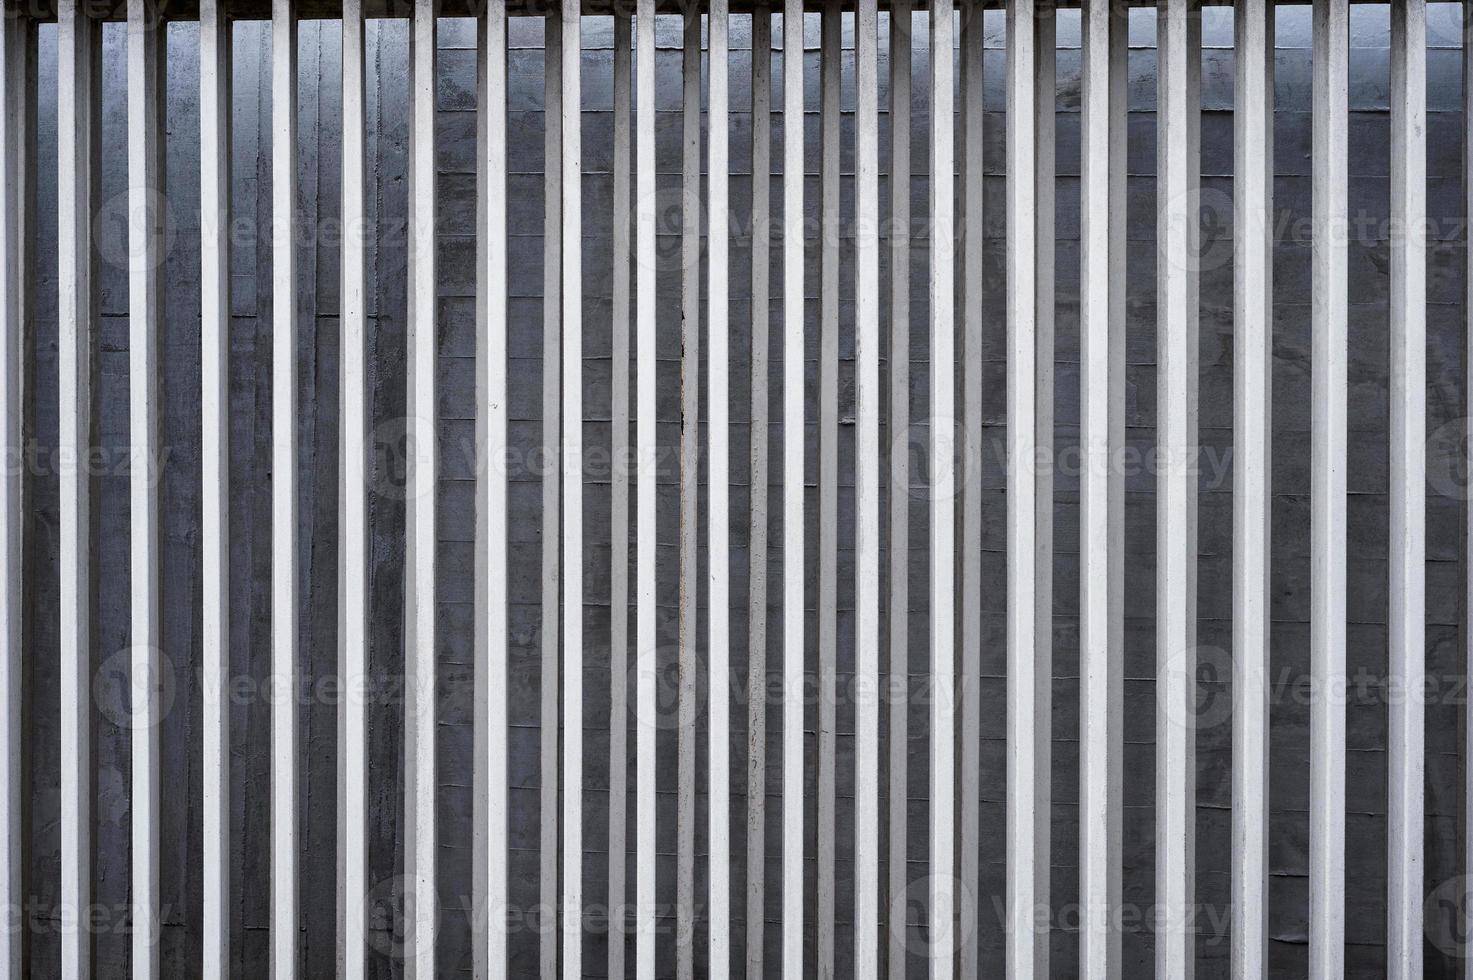 clôture verticale en aluminium sur fond de mur en béton photo